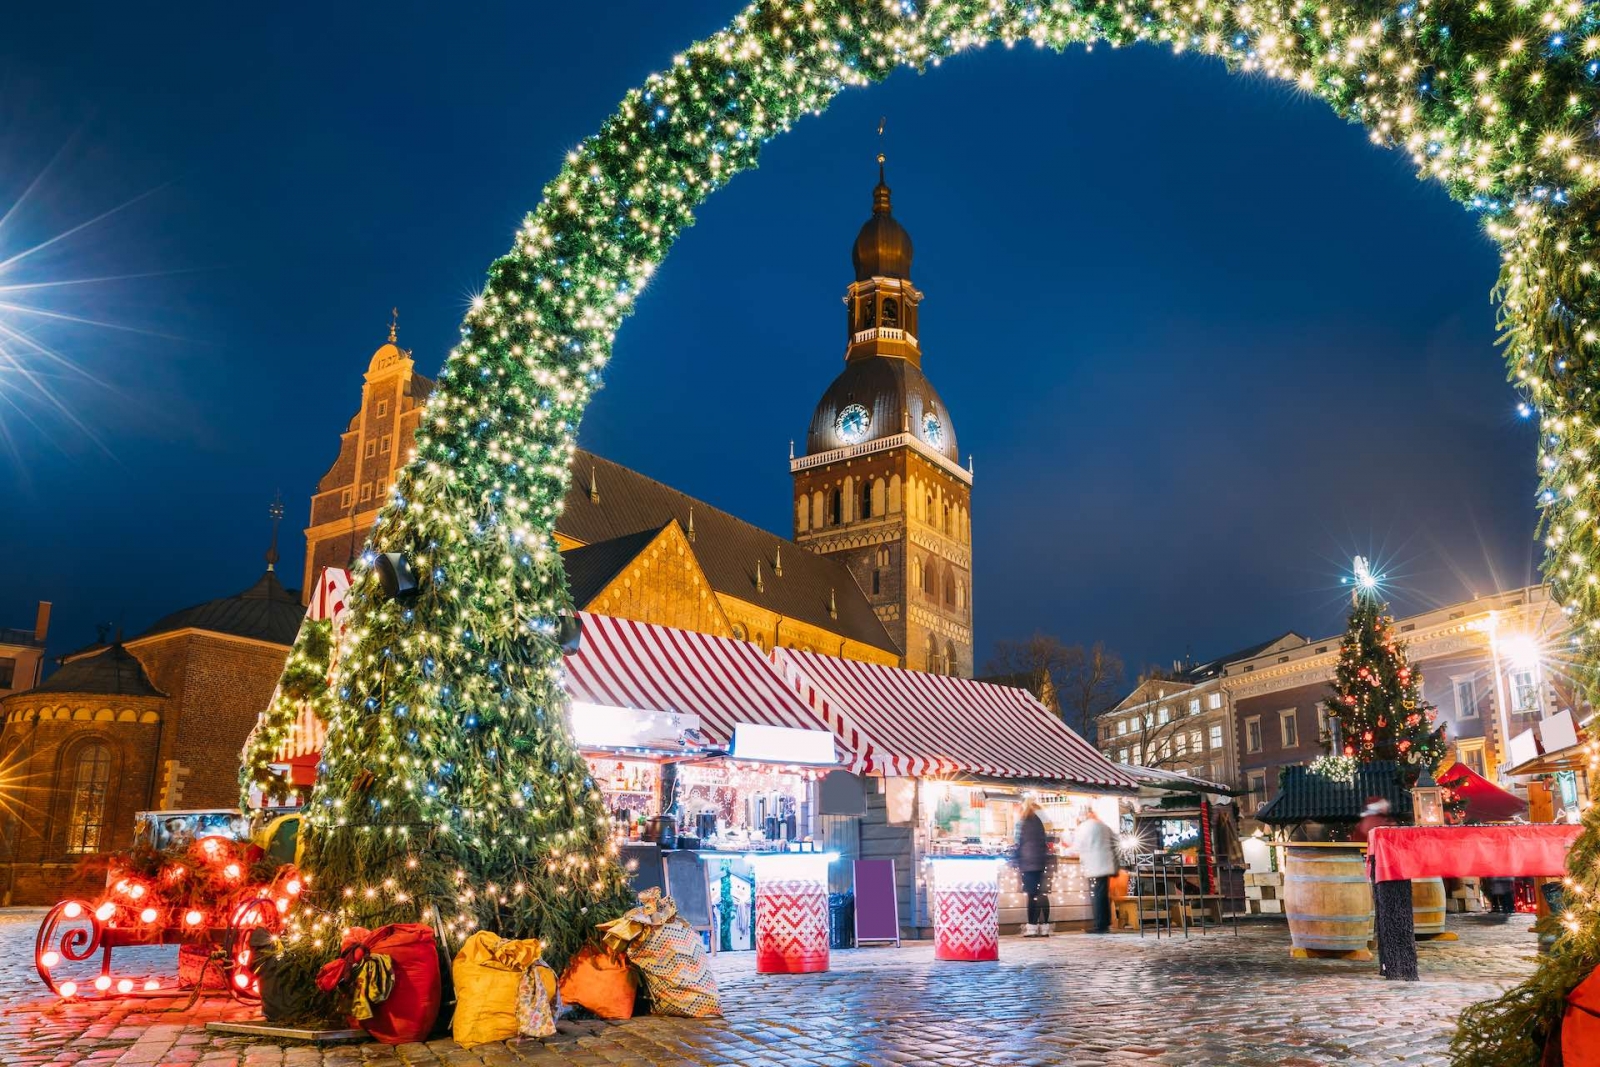 Riga, Letonia.  Mercado De Navidad En La Plaza De La Cúpula Con La Catedral De La Cúpula De Riga.  Árbol De Navidad Y Casas Comerciales